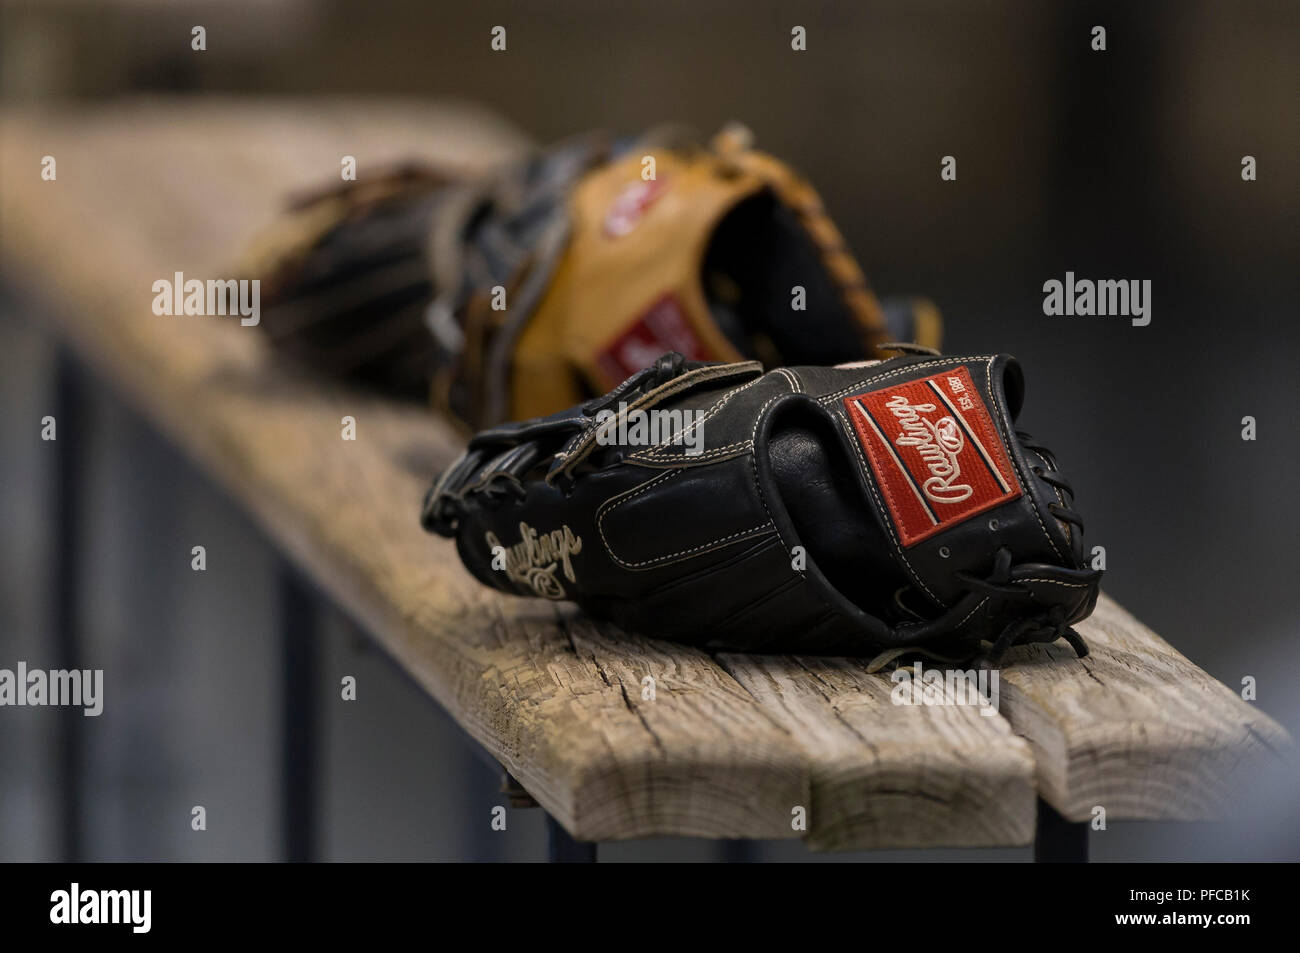 Milwaukee, USA. 20 agosto, 2018. Agosto 20, 2018: Rawlings guante en los  tintos bench antes del juego del béisbol de Grandes Ligas entre los  Cerveceros de Milwaukee y los Rojos de Cincinnati